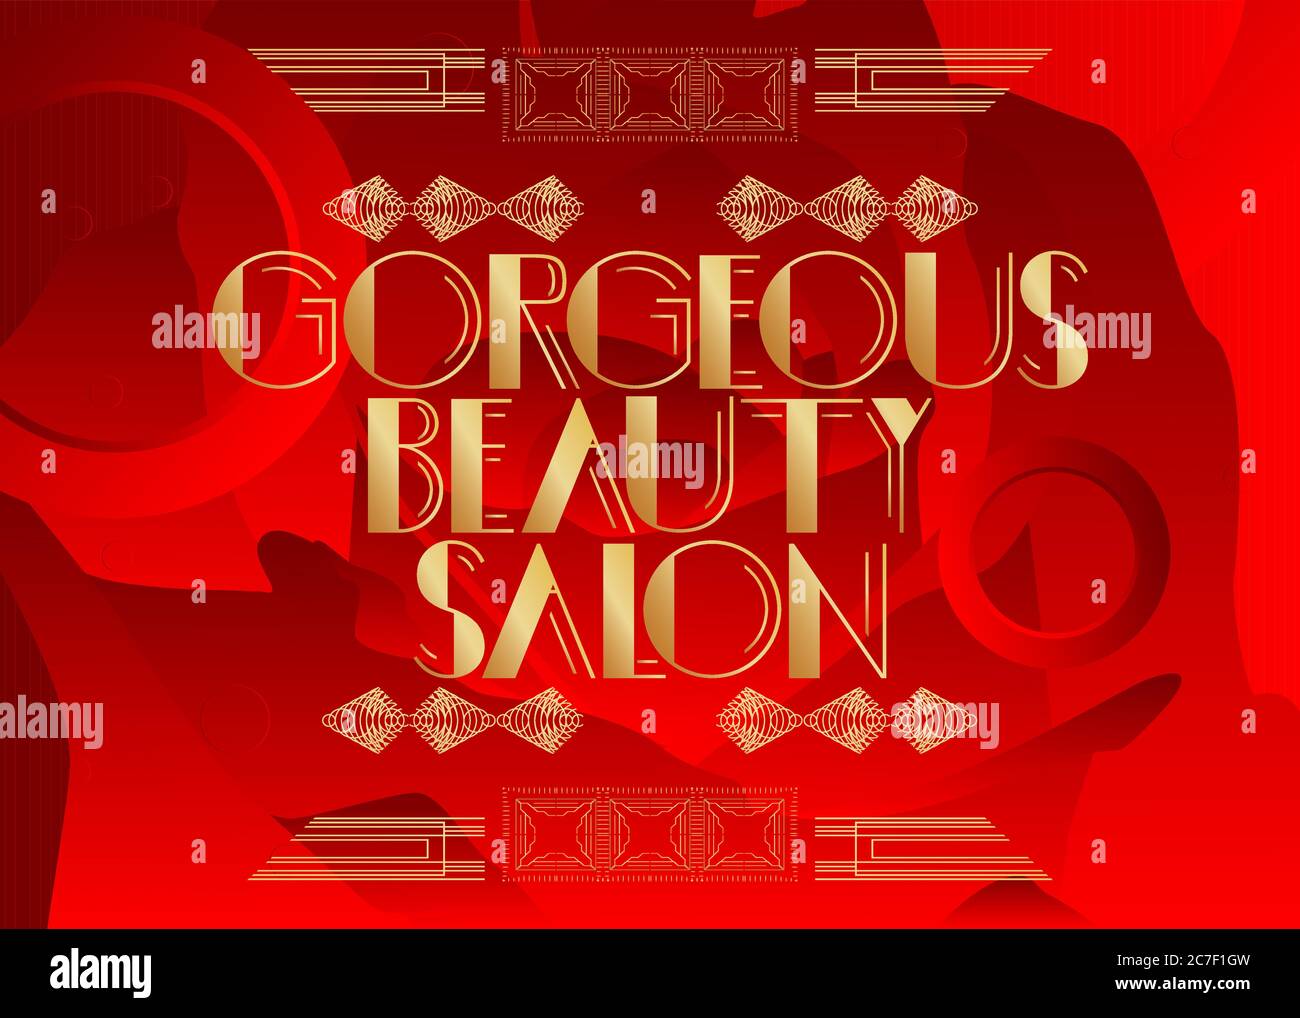 Art Deco wunderschöne Beauty Salon Text. Dekorative Grußkarte, Schild mit Vintage-Buchstaben. Stock Vektor